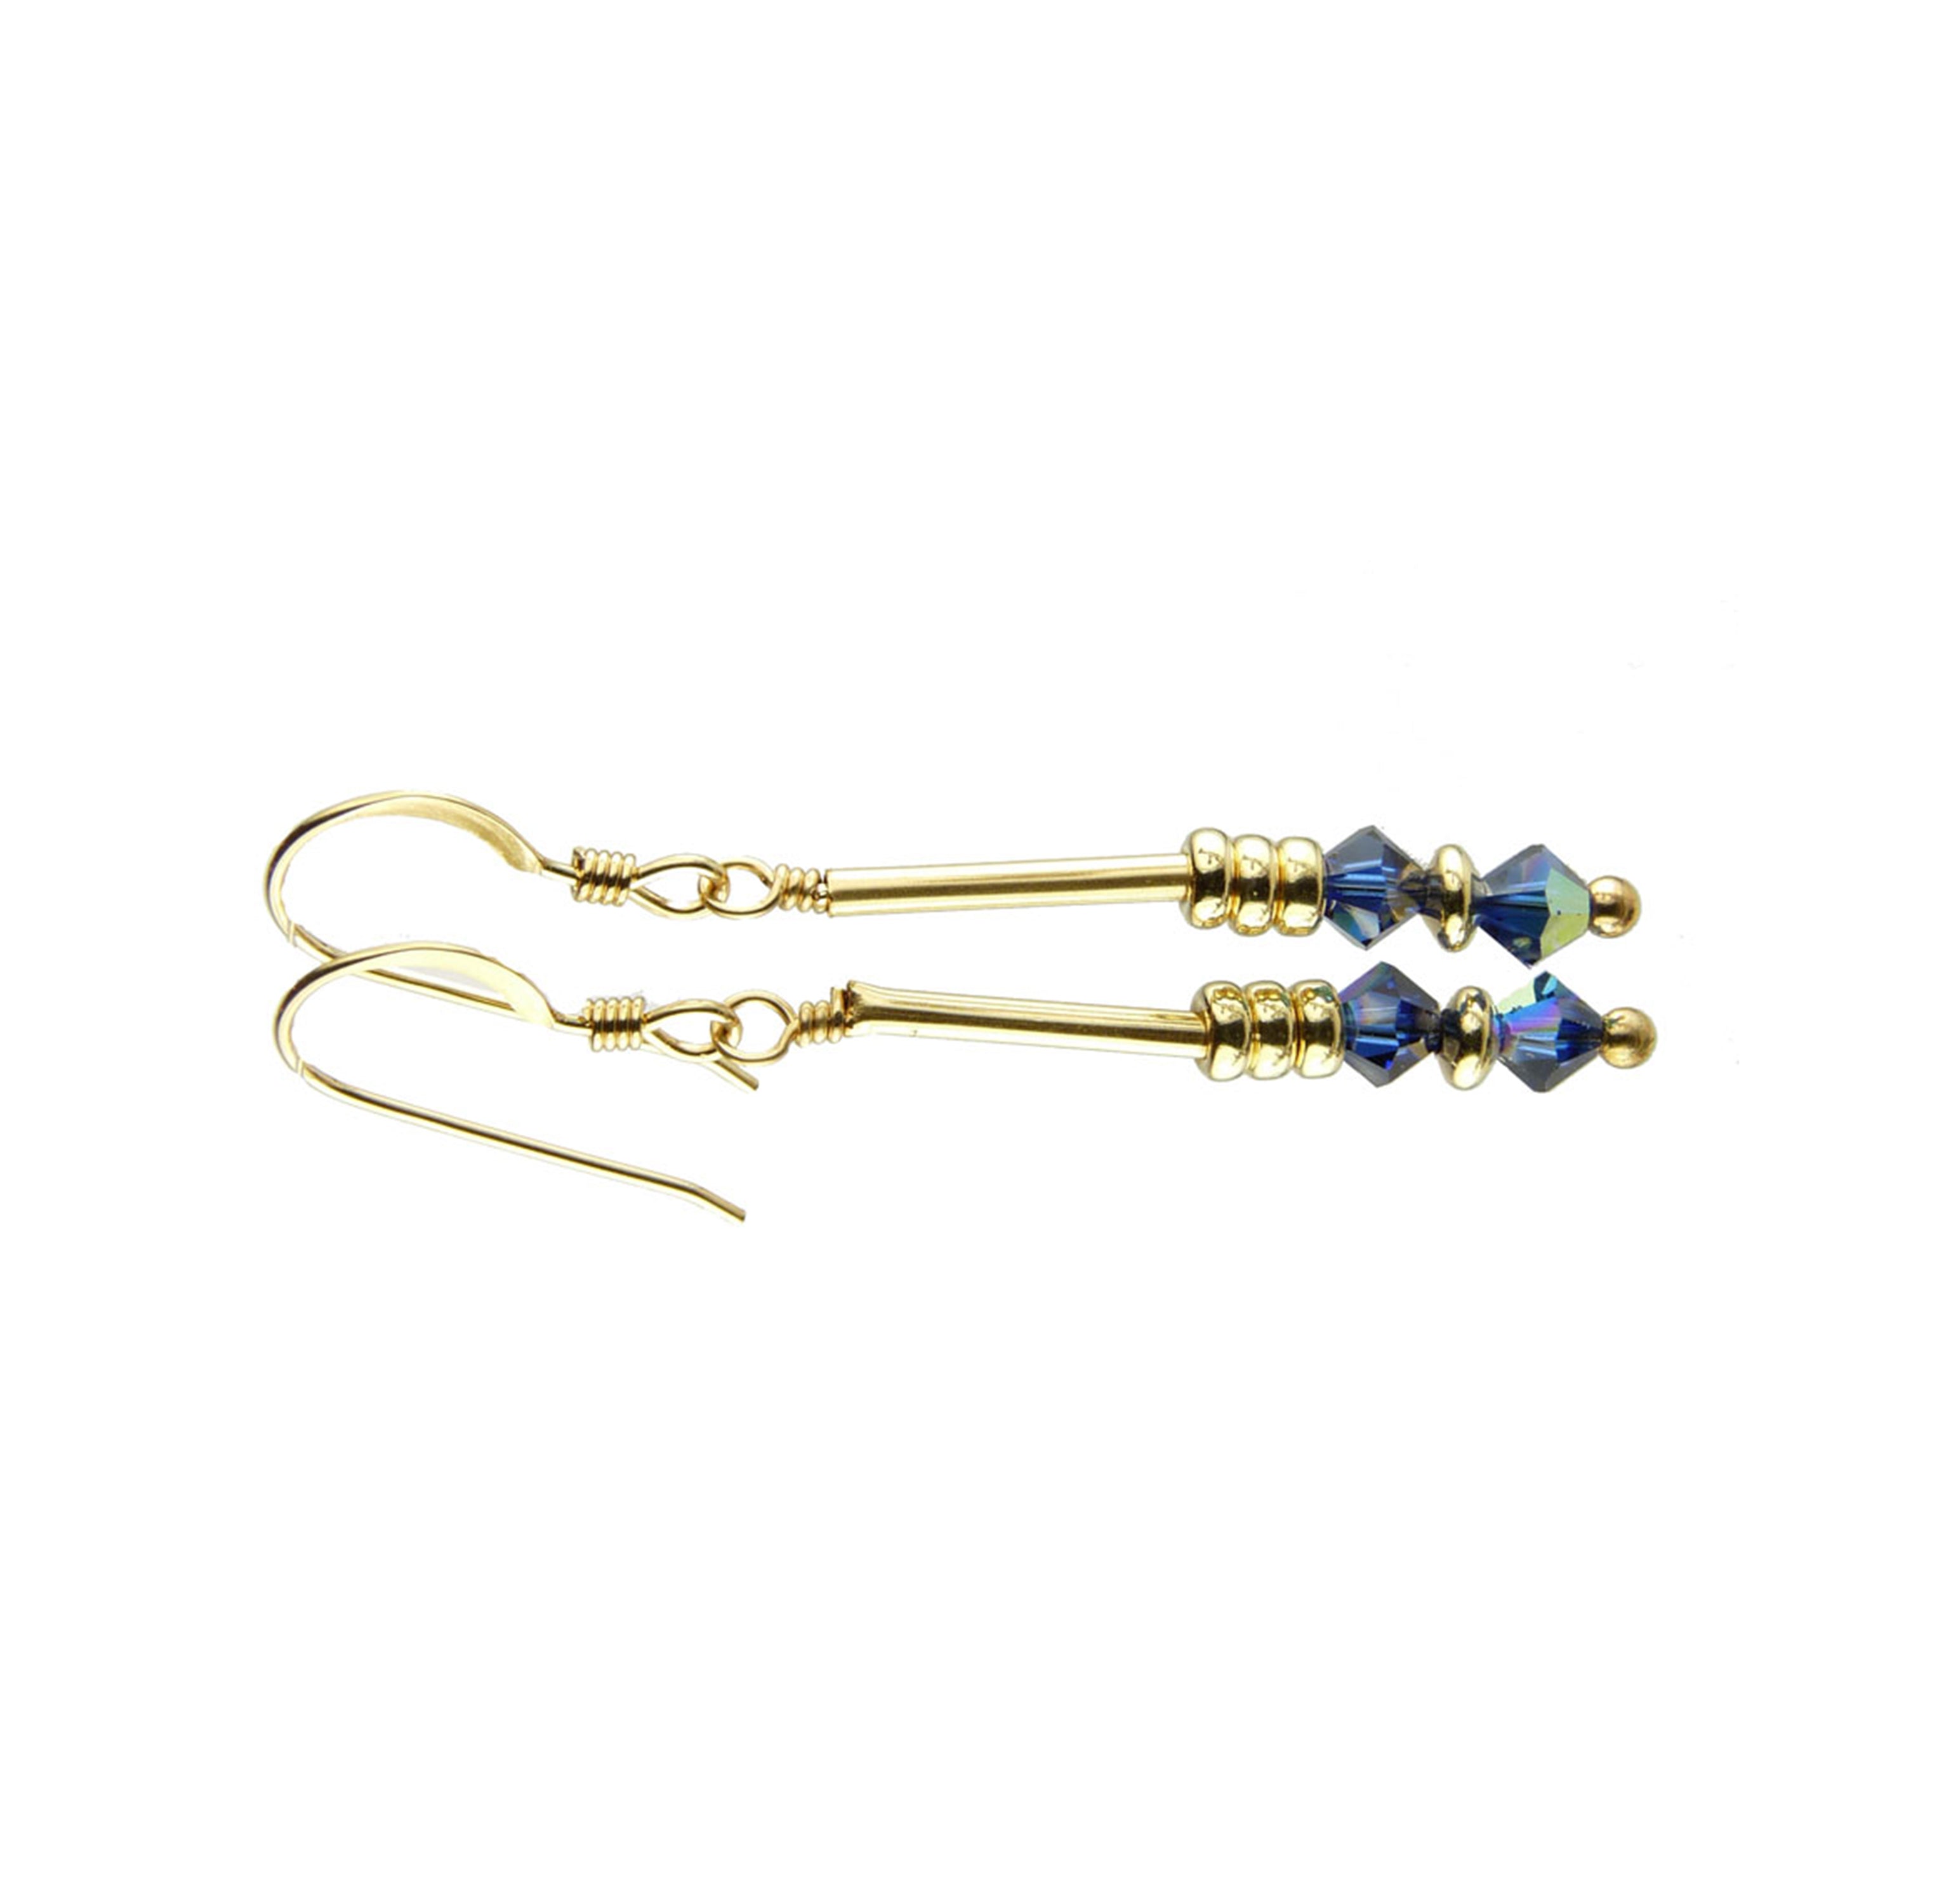 Dark Sapphire Earrings, September Birthstone Earrings, Dark Blue Minimalist 14K GF Dangle Earrings, Crystal Jewelry Elements